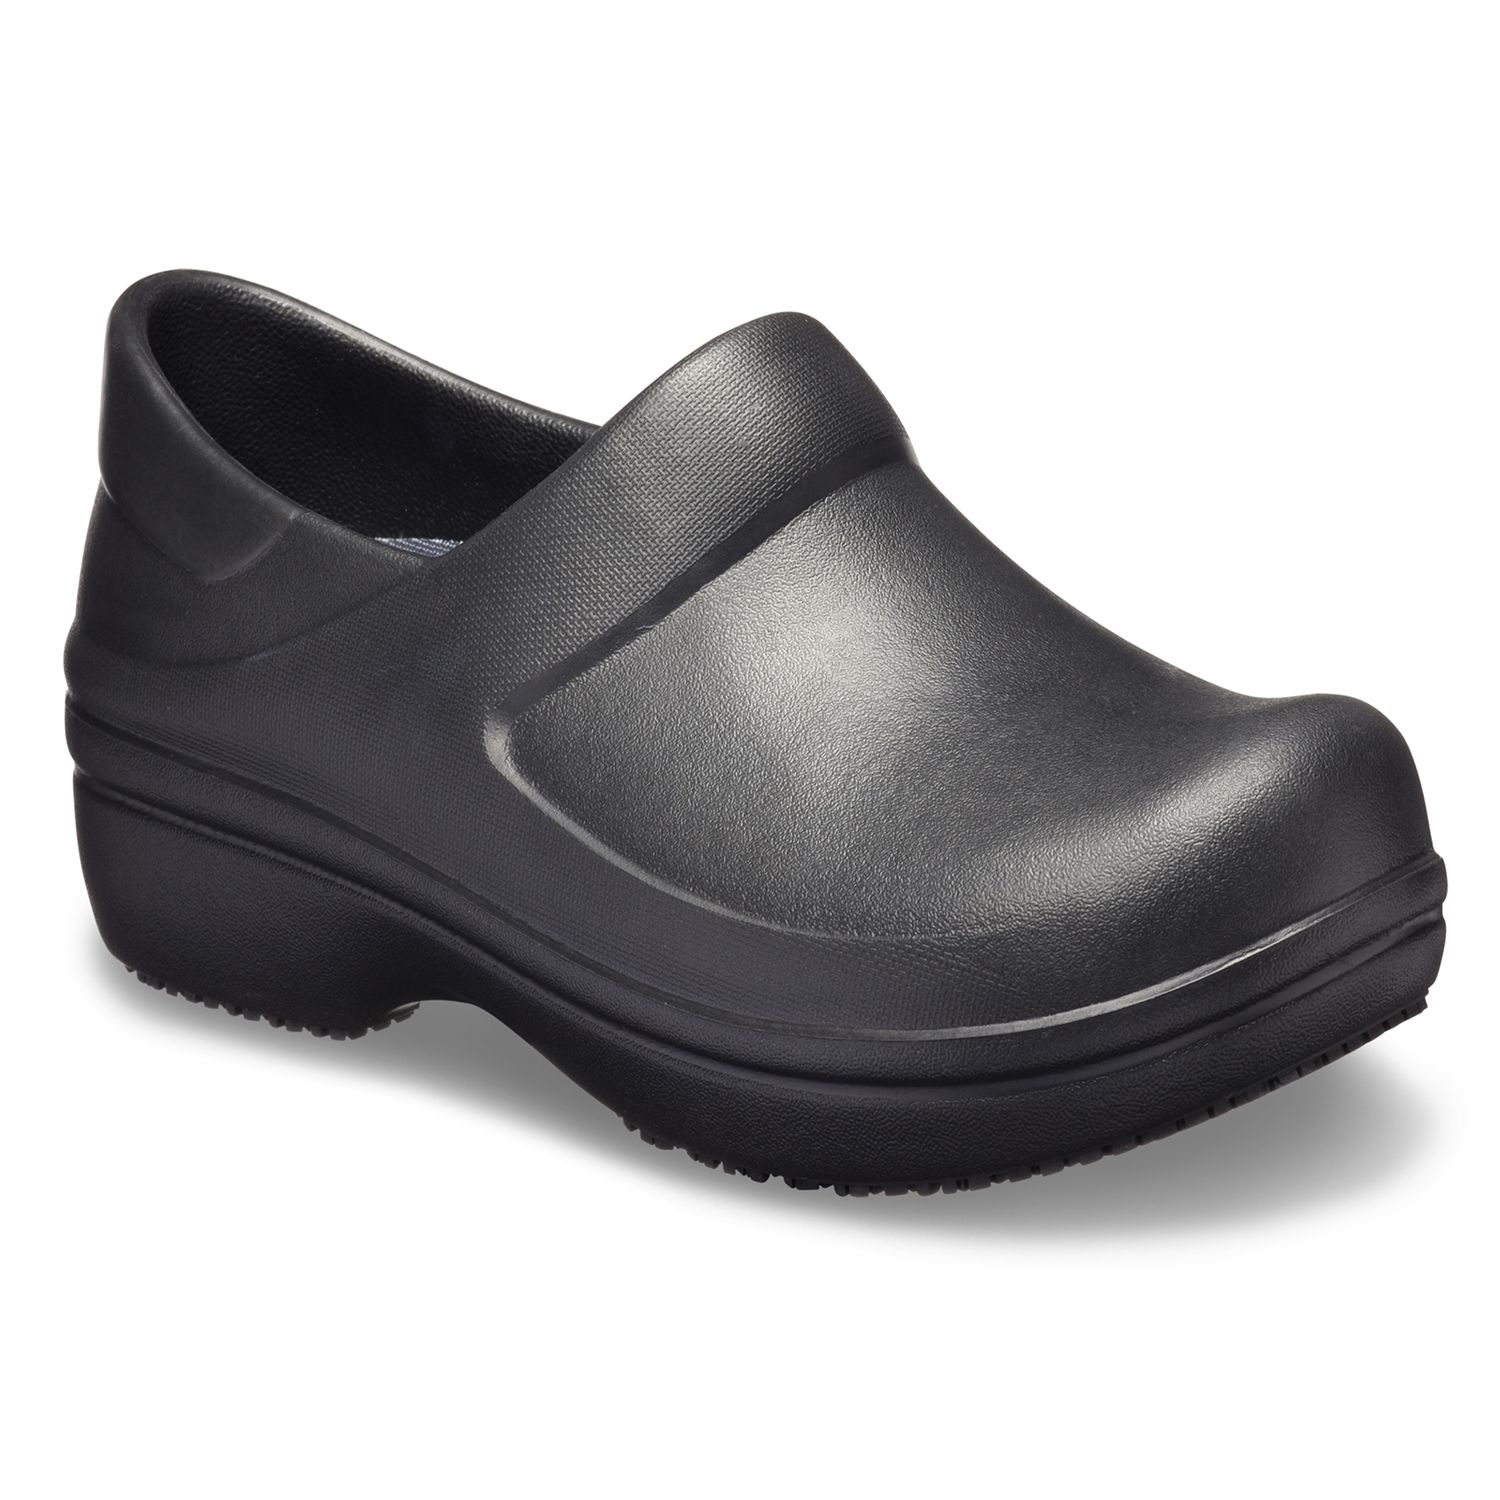 crocs black shoes for ladies